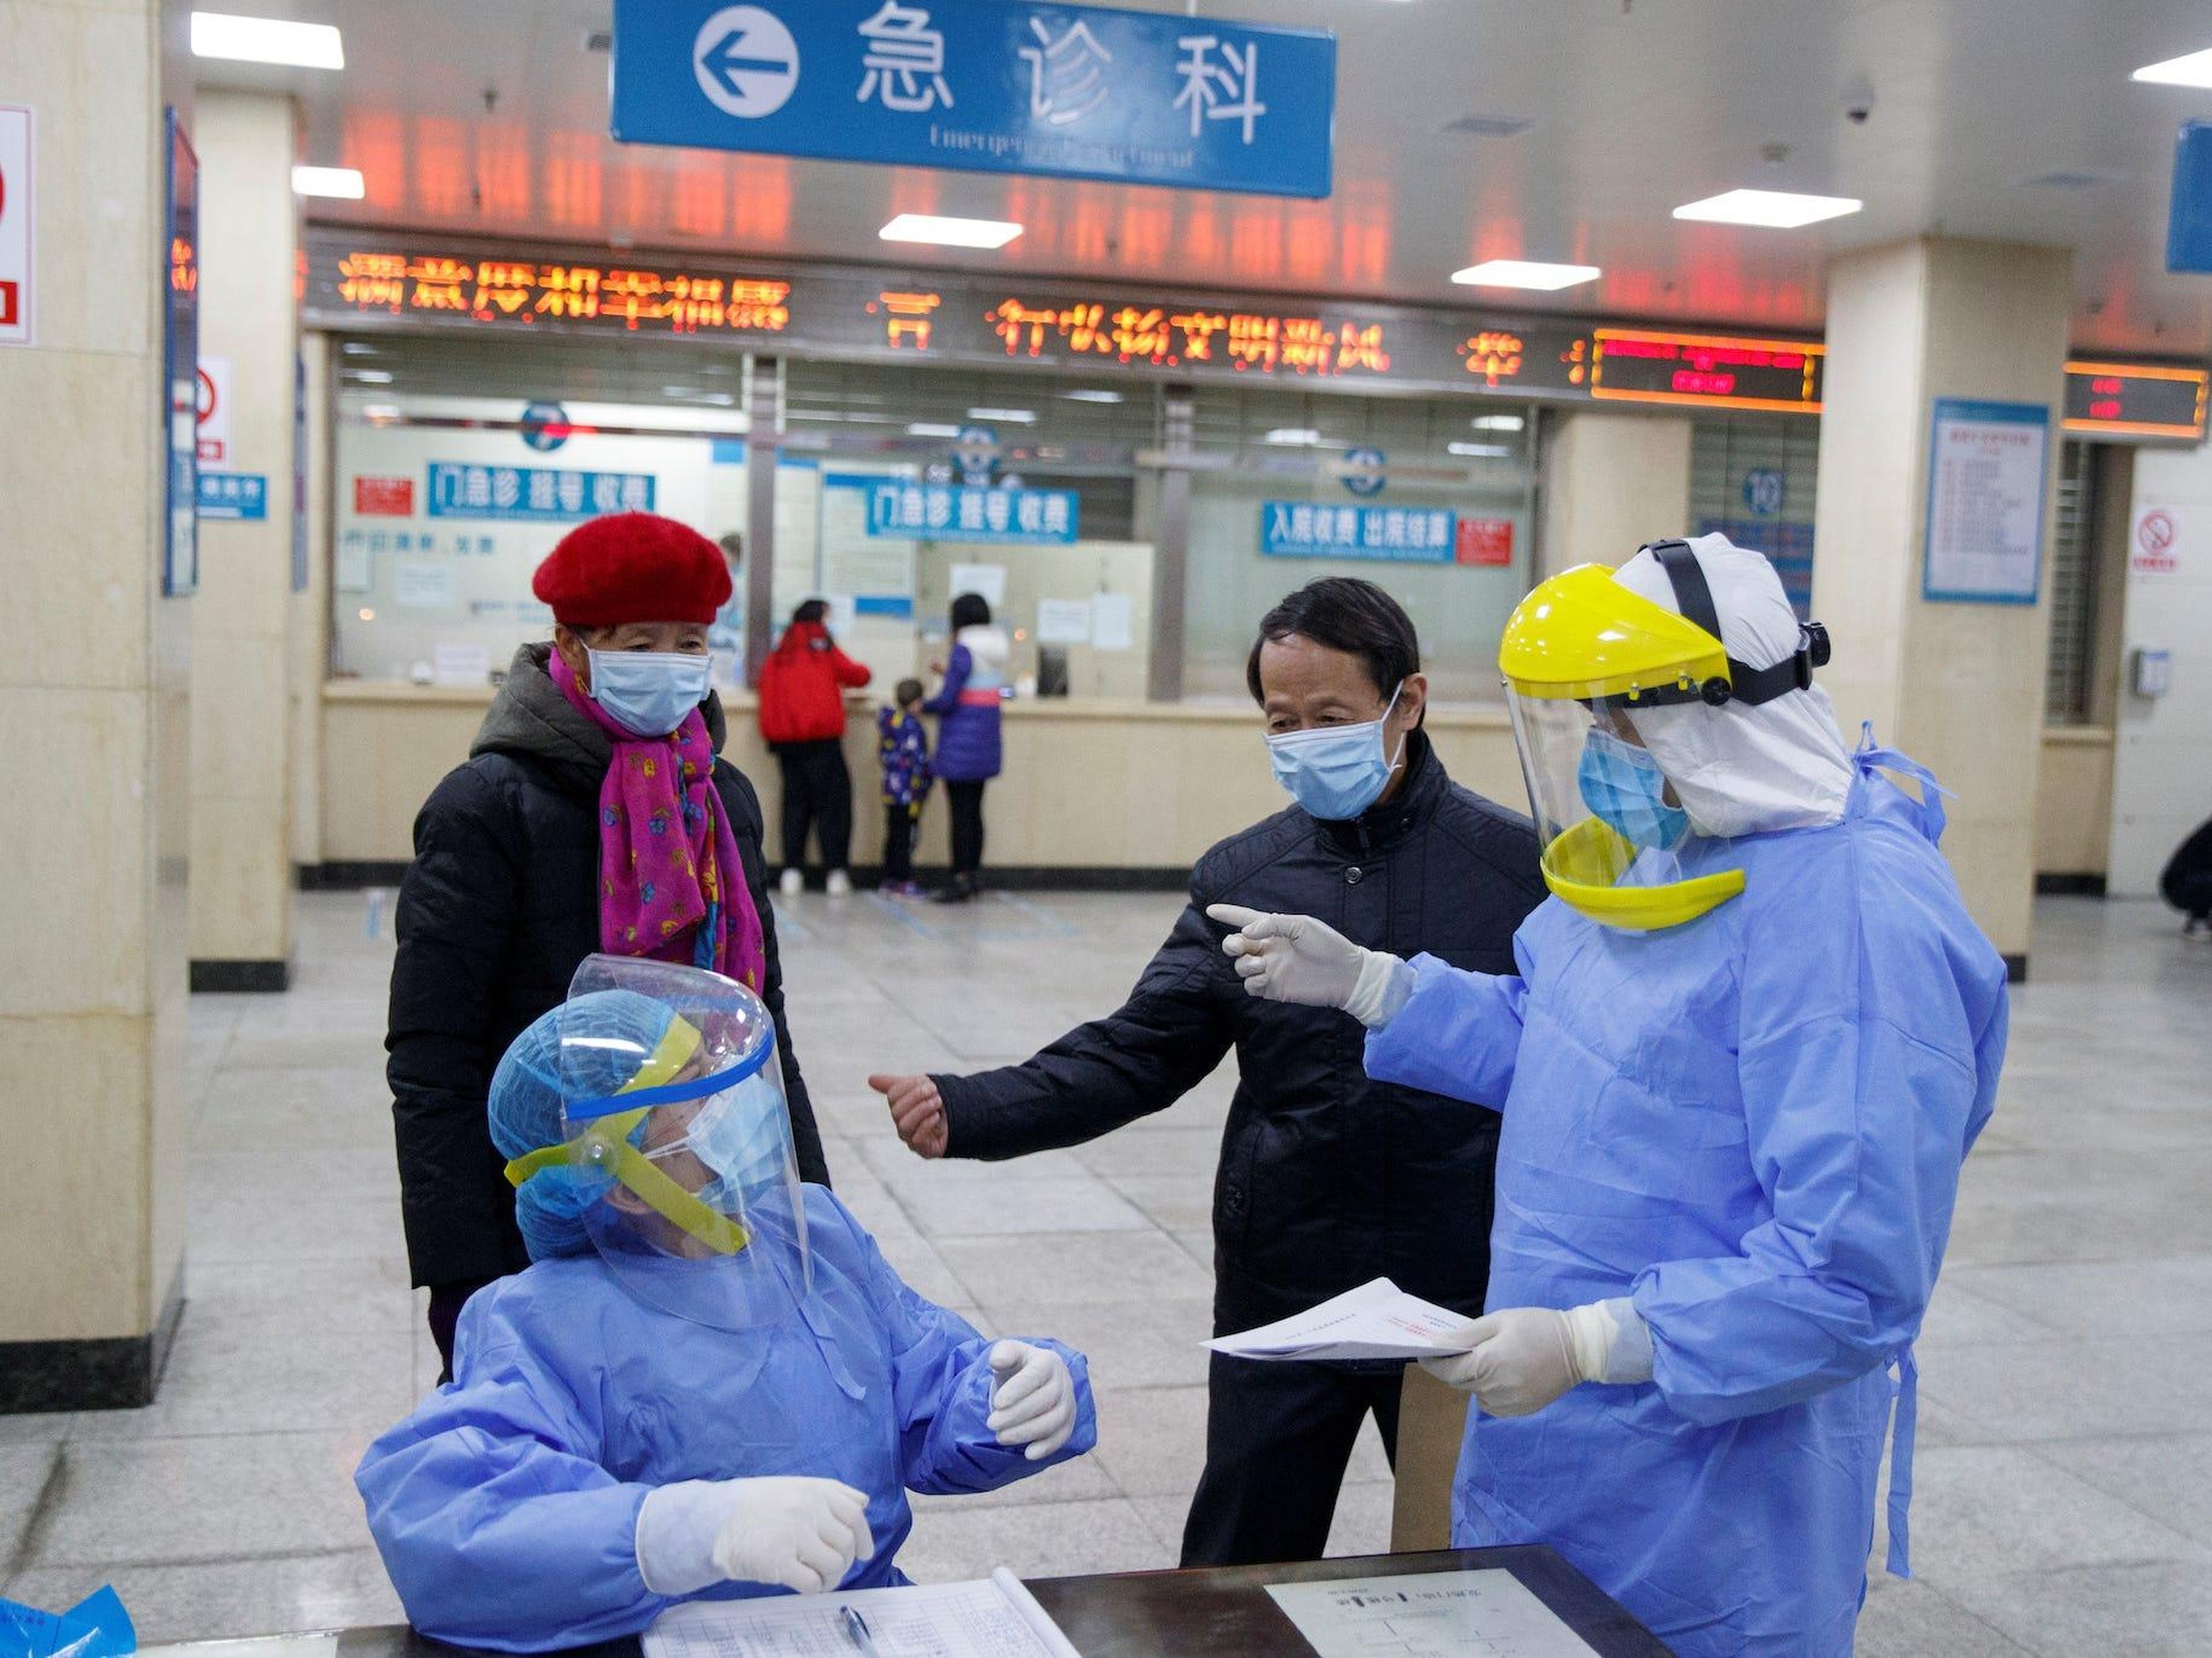 Enfermeras con equipo de protección en la recepción del First People's Hospital en Yueyang, provincia de Hunan, China, 28 de enero de 2020.